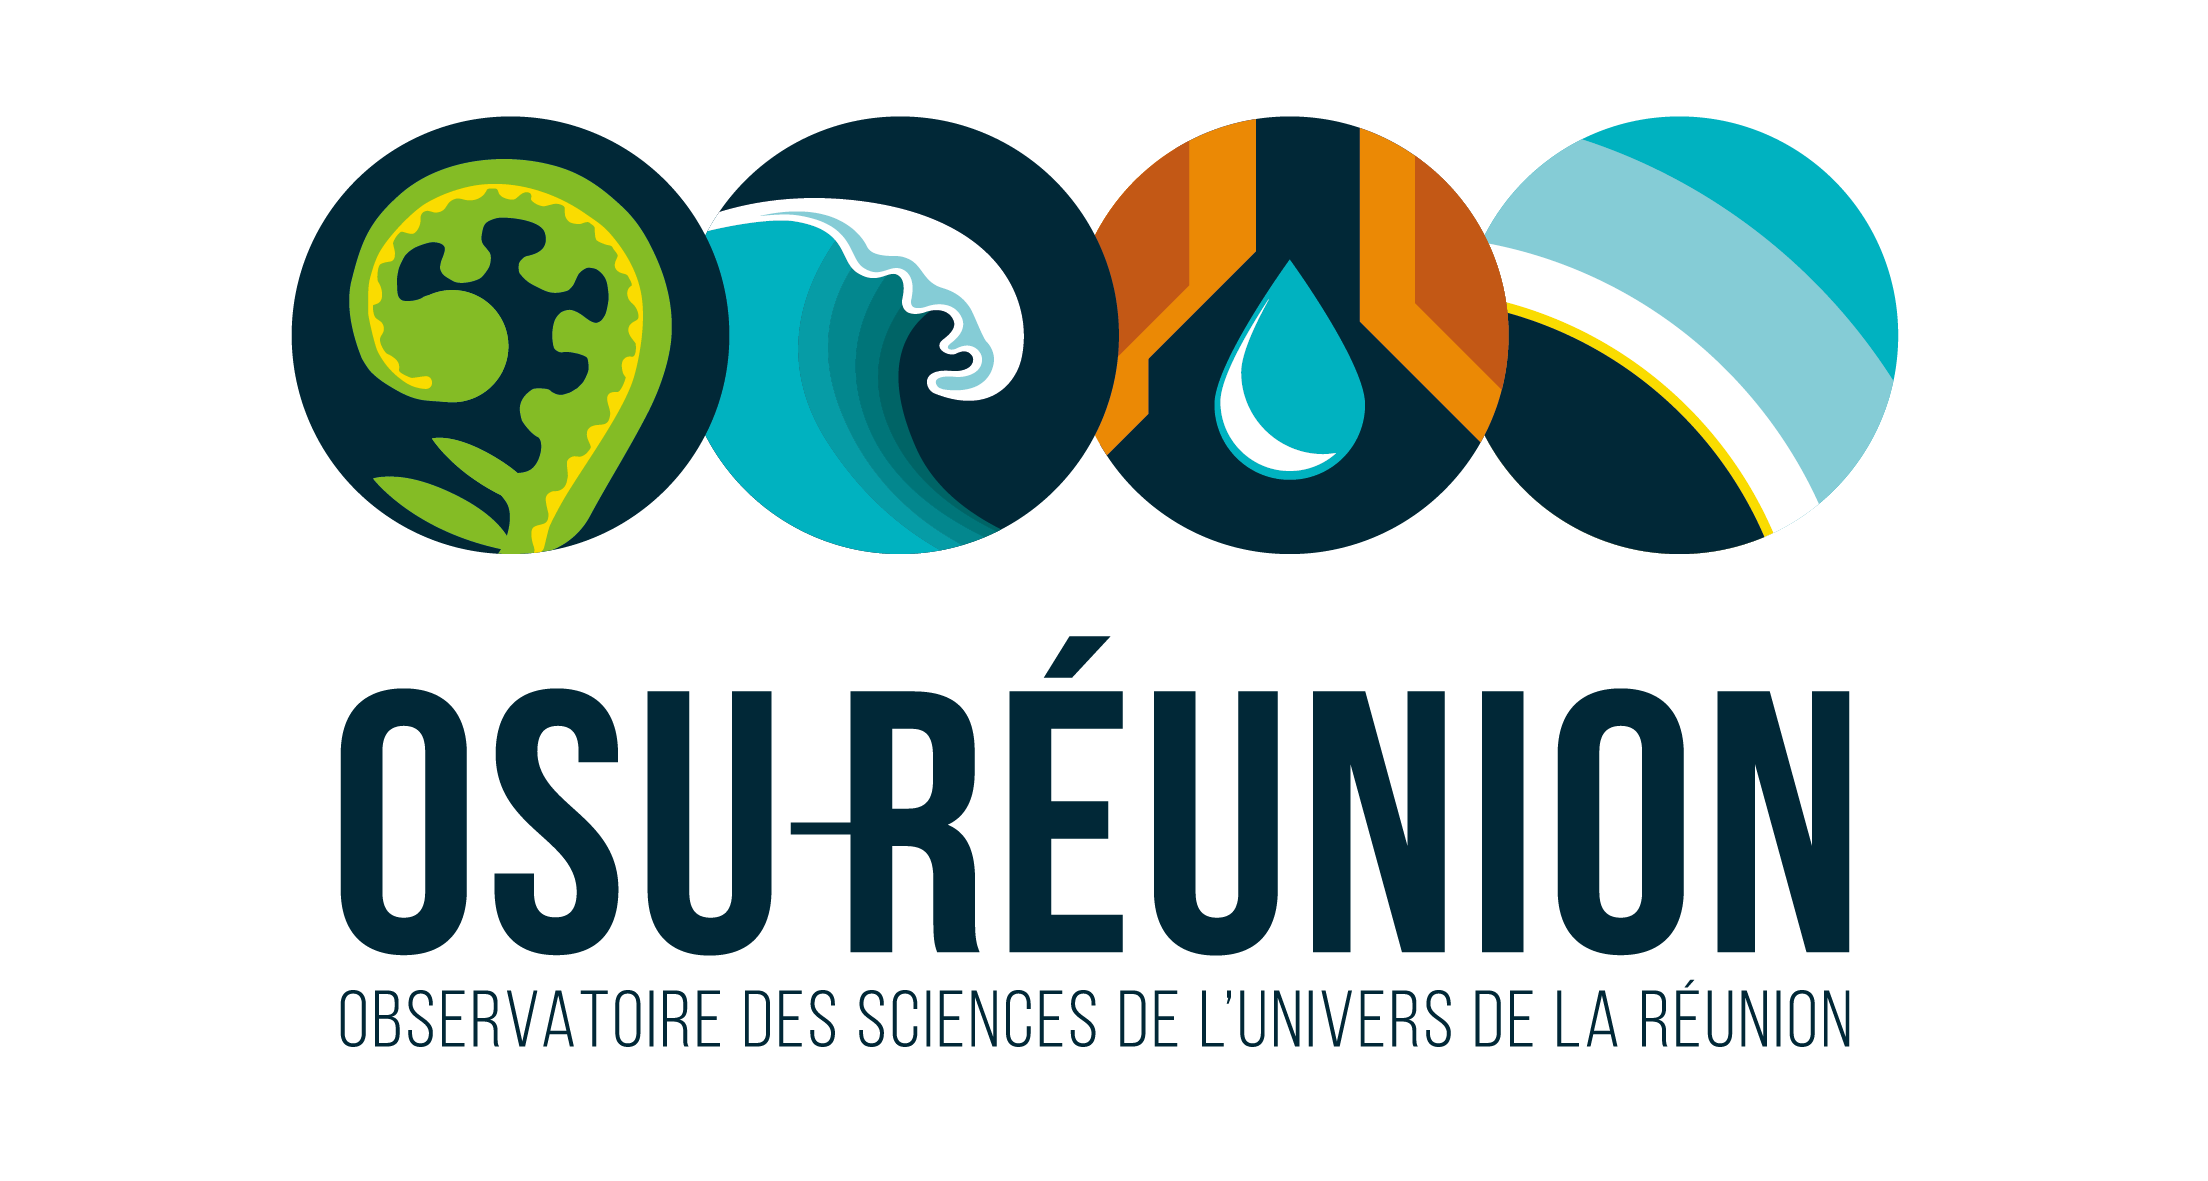 Catalogue de données - OSU-Réunion